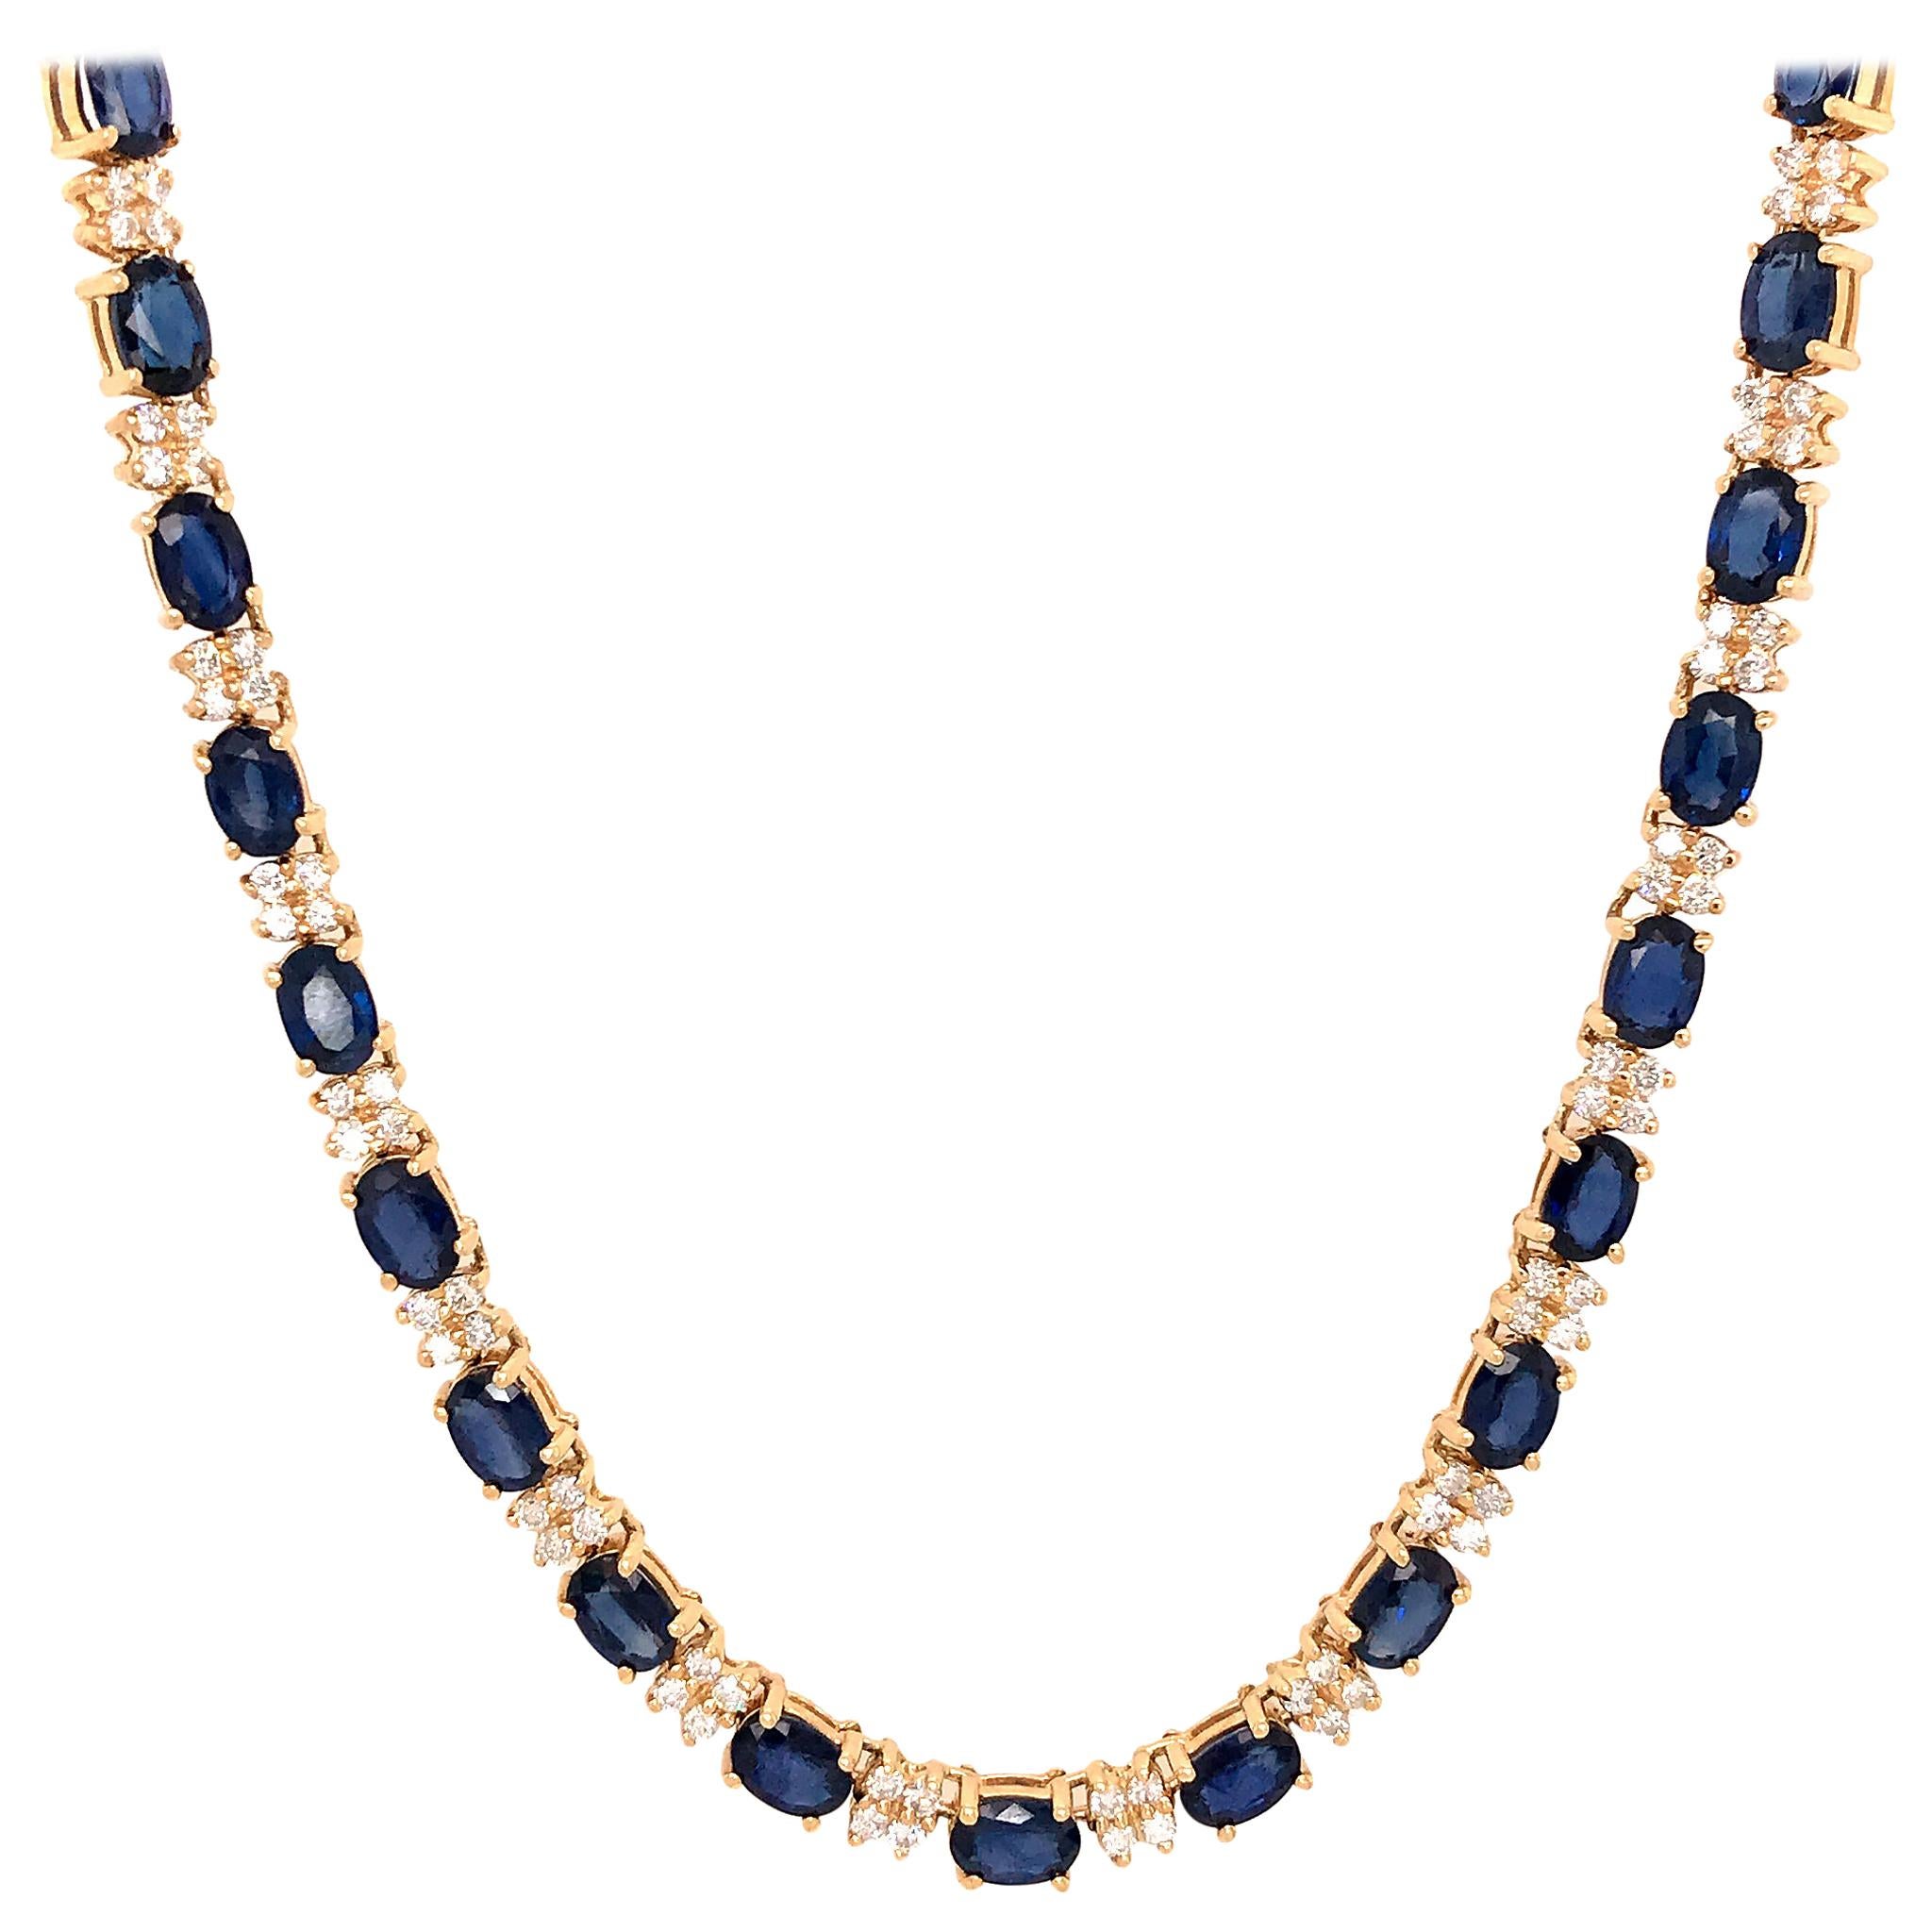 Fabulous 14 Karat Yellow Gold Diamond and Sapphire Necklace